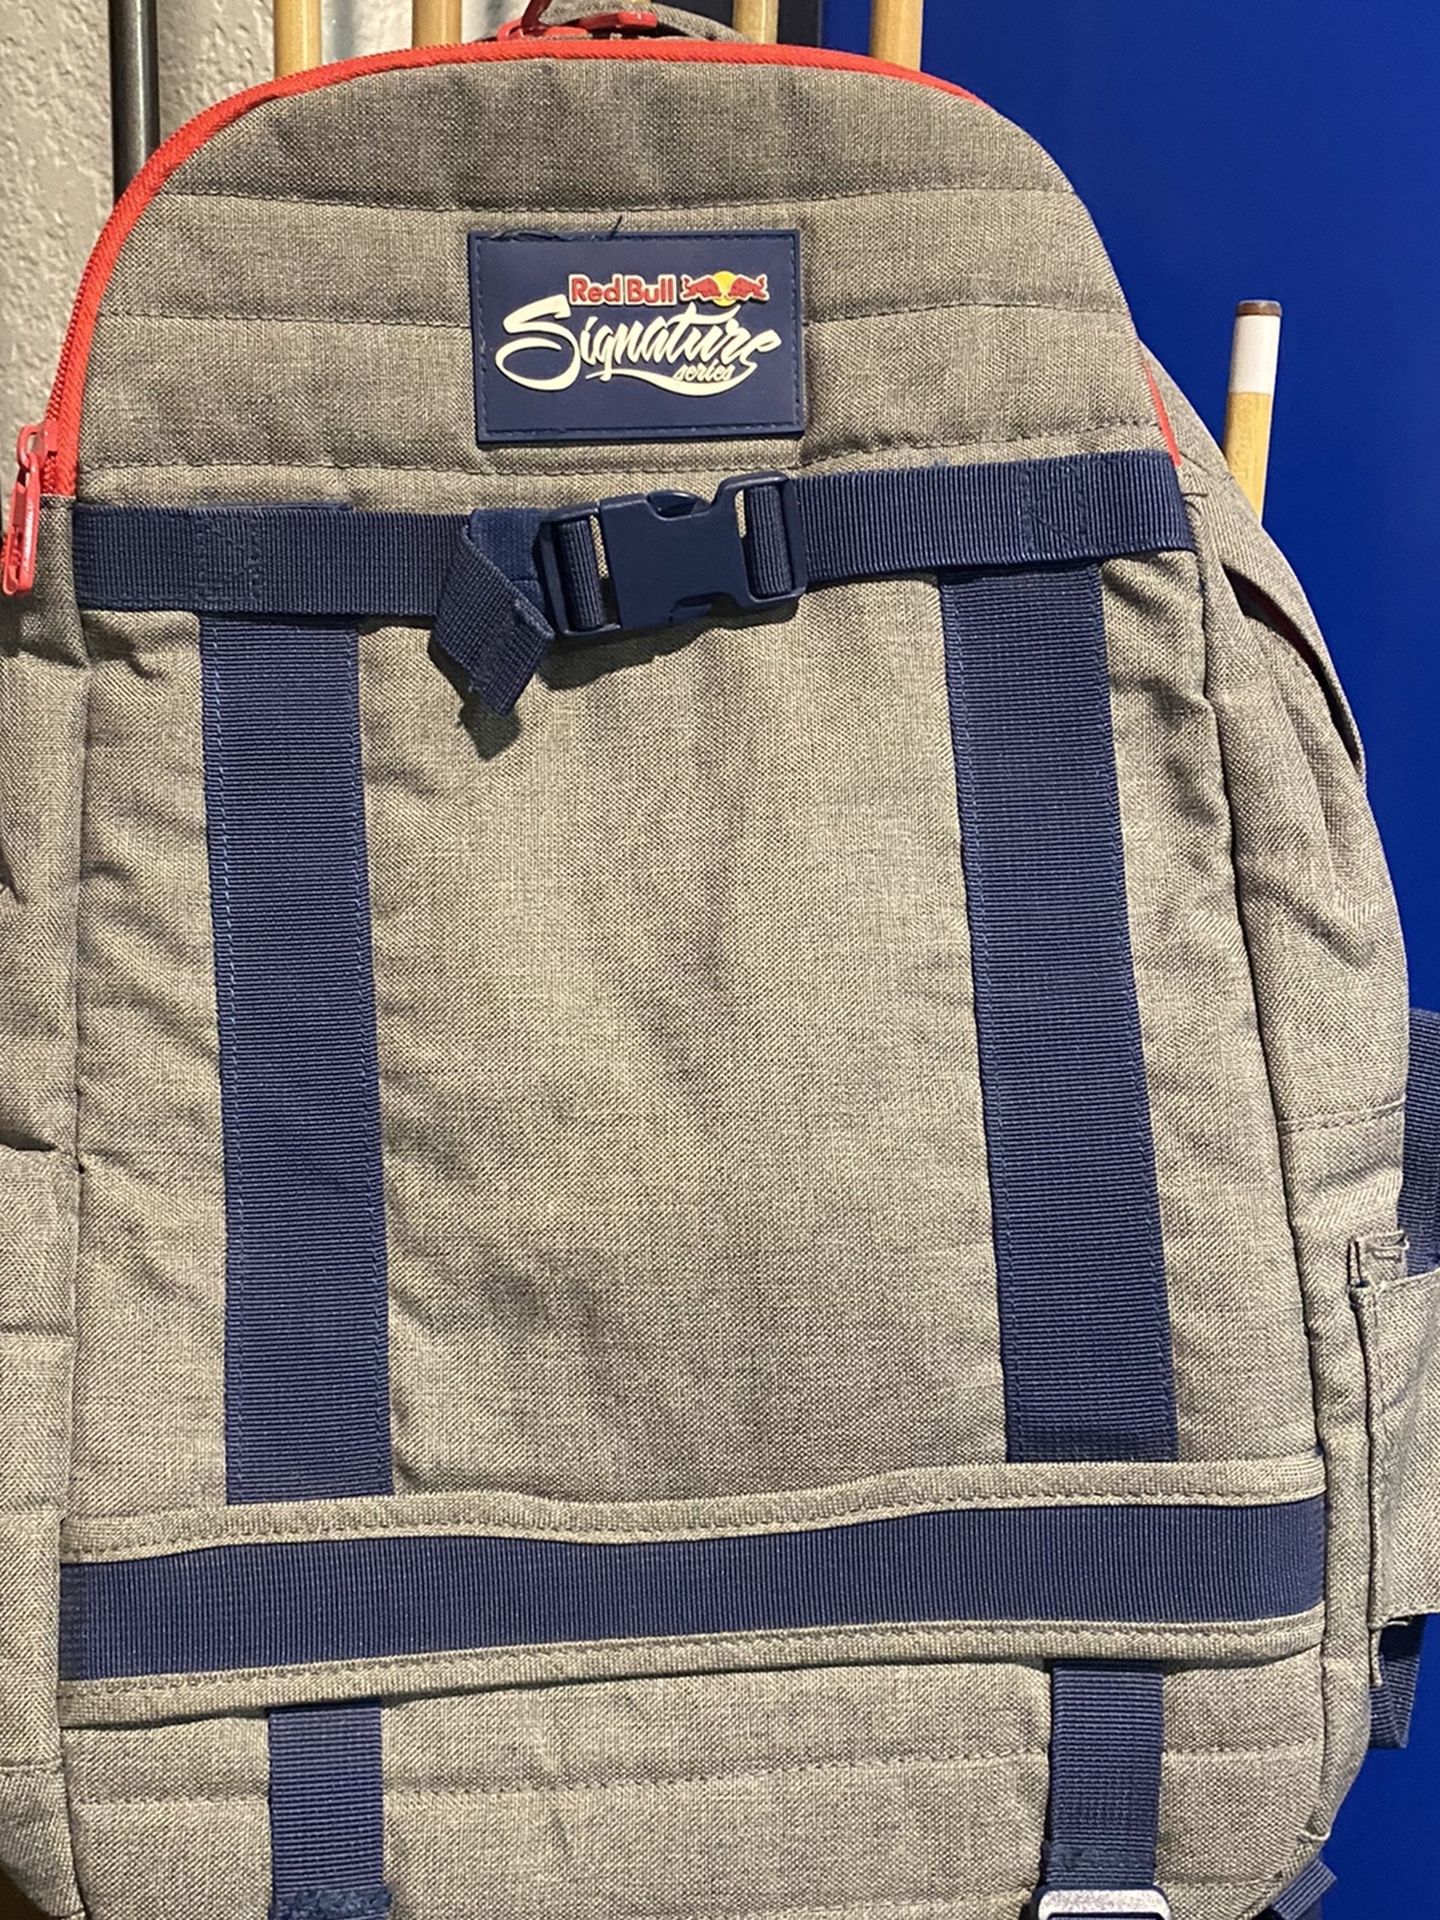 Redbull OGIO SKATERS backpack